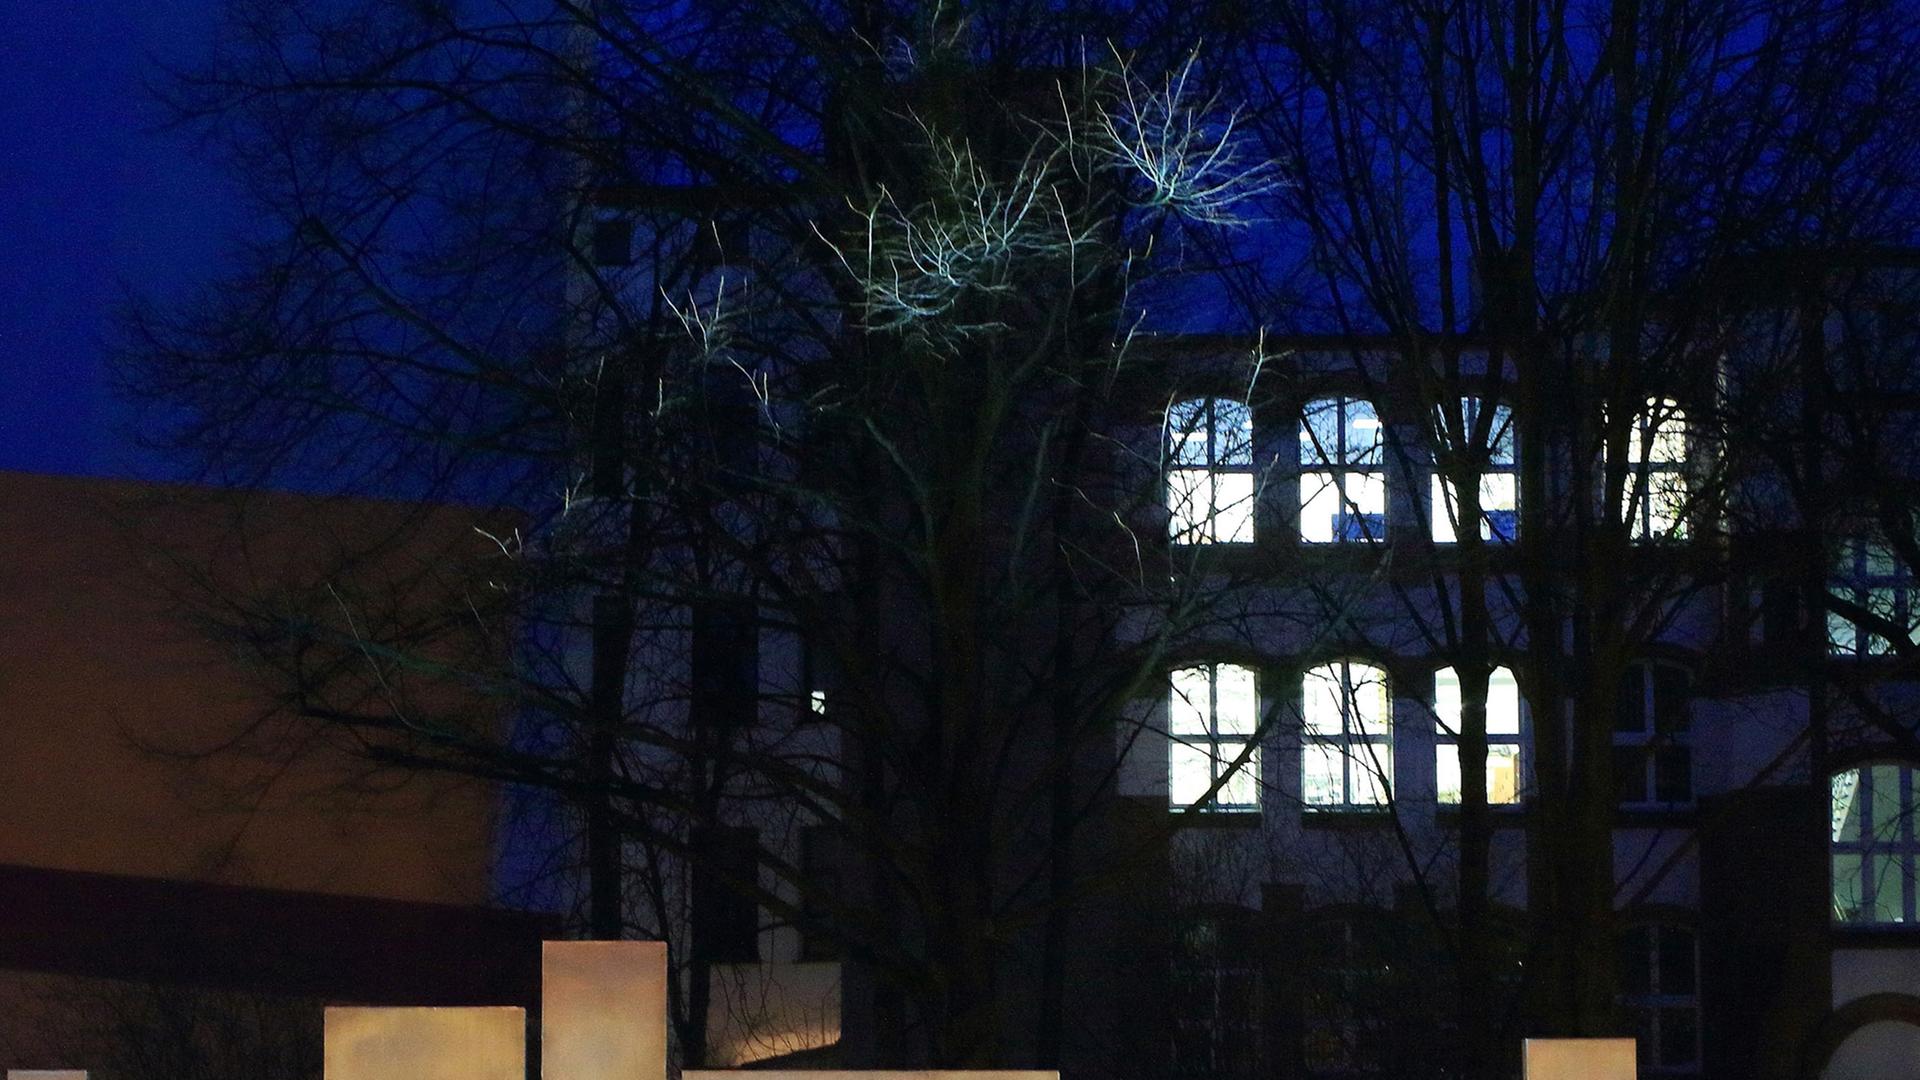 Außenansicht eines Universitätsgebäudes bei Nacht mit hellerleuchteten Fenstern, im Vordergrund der Schriftzug "Universität".